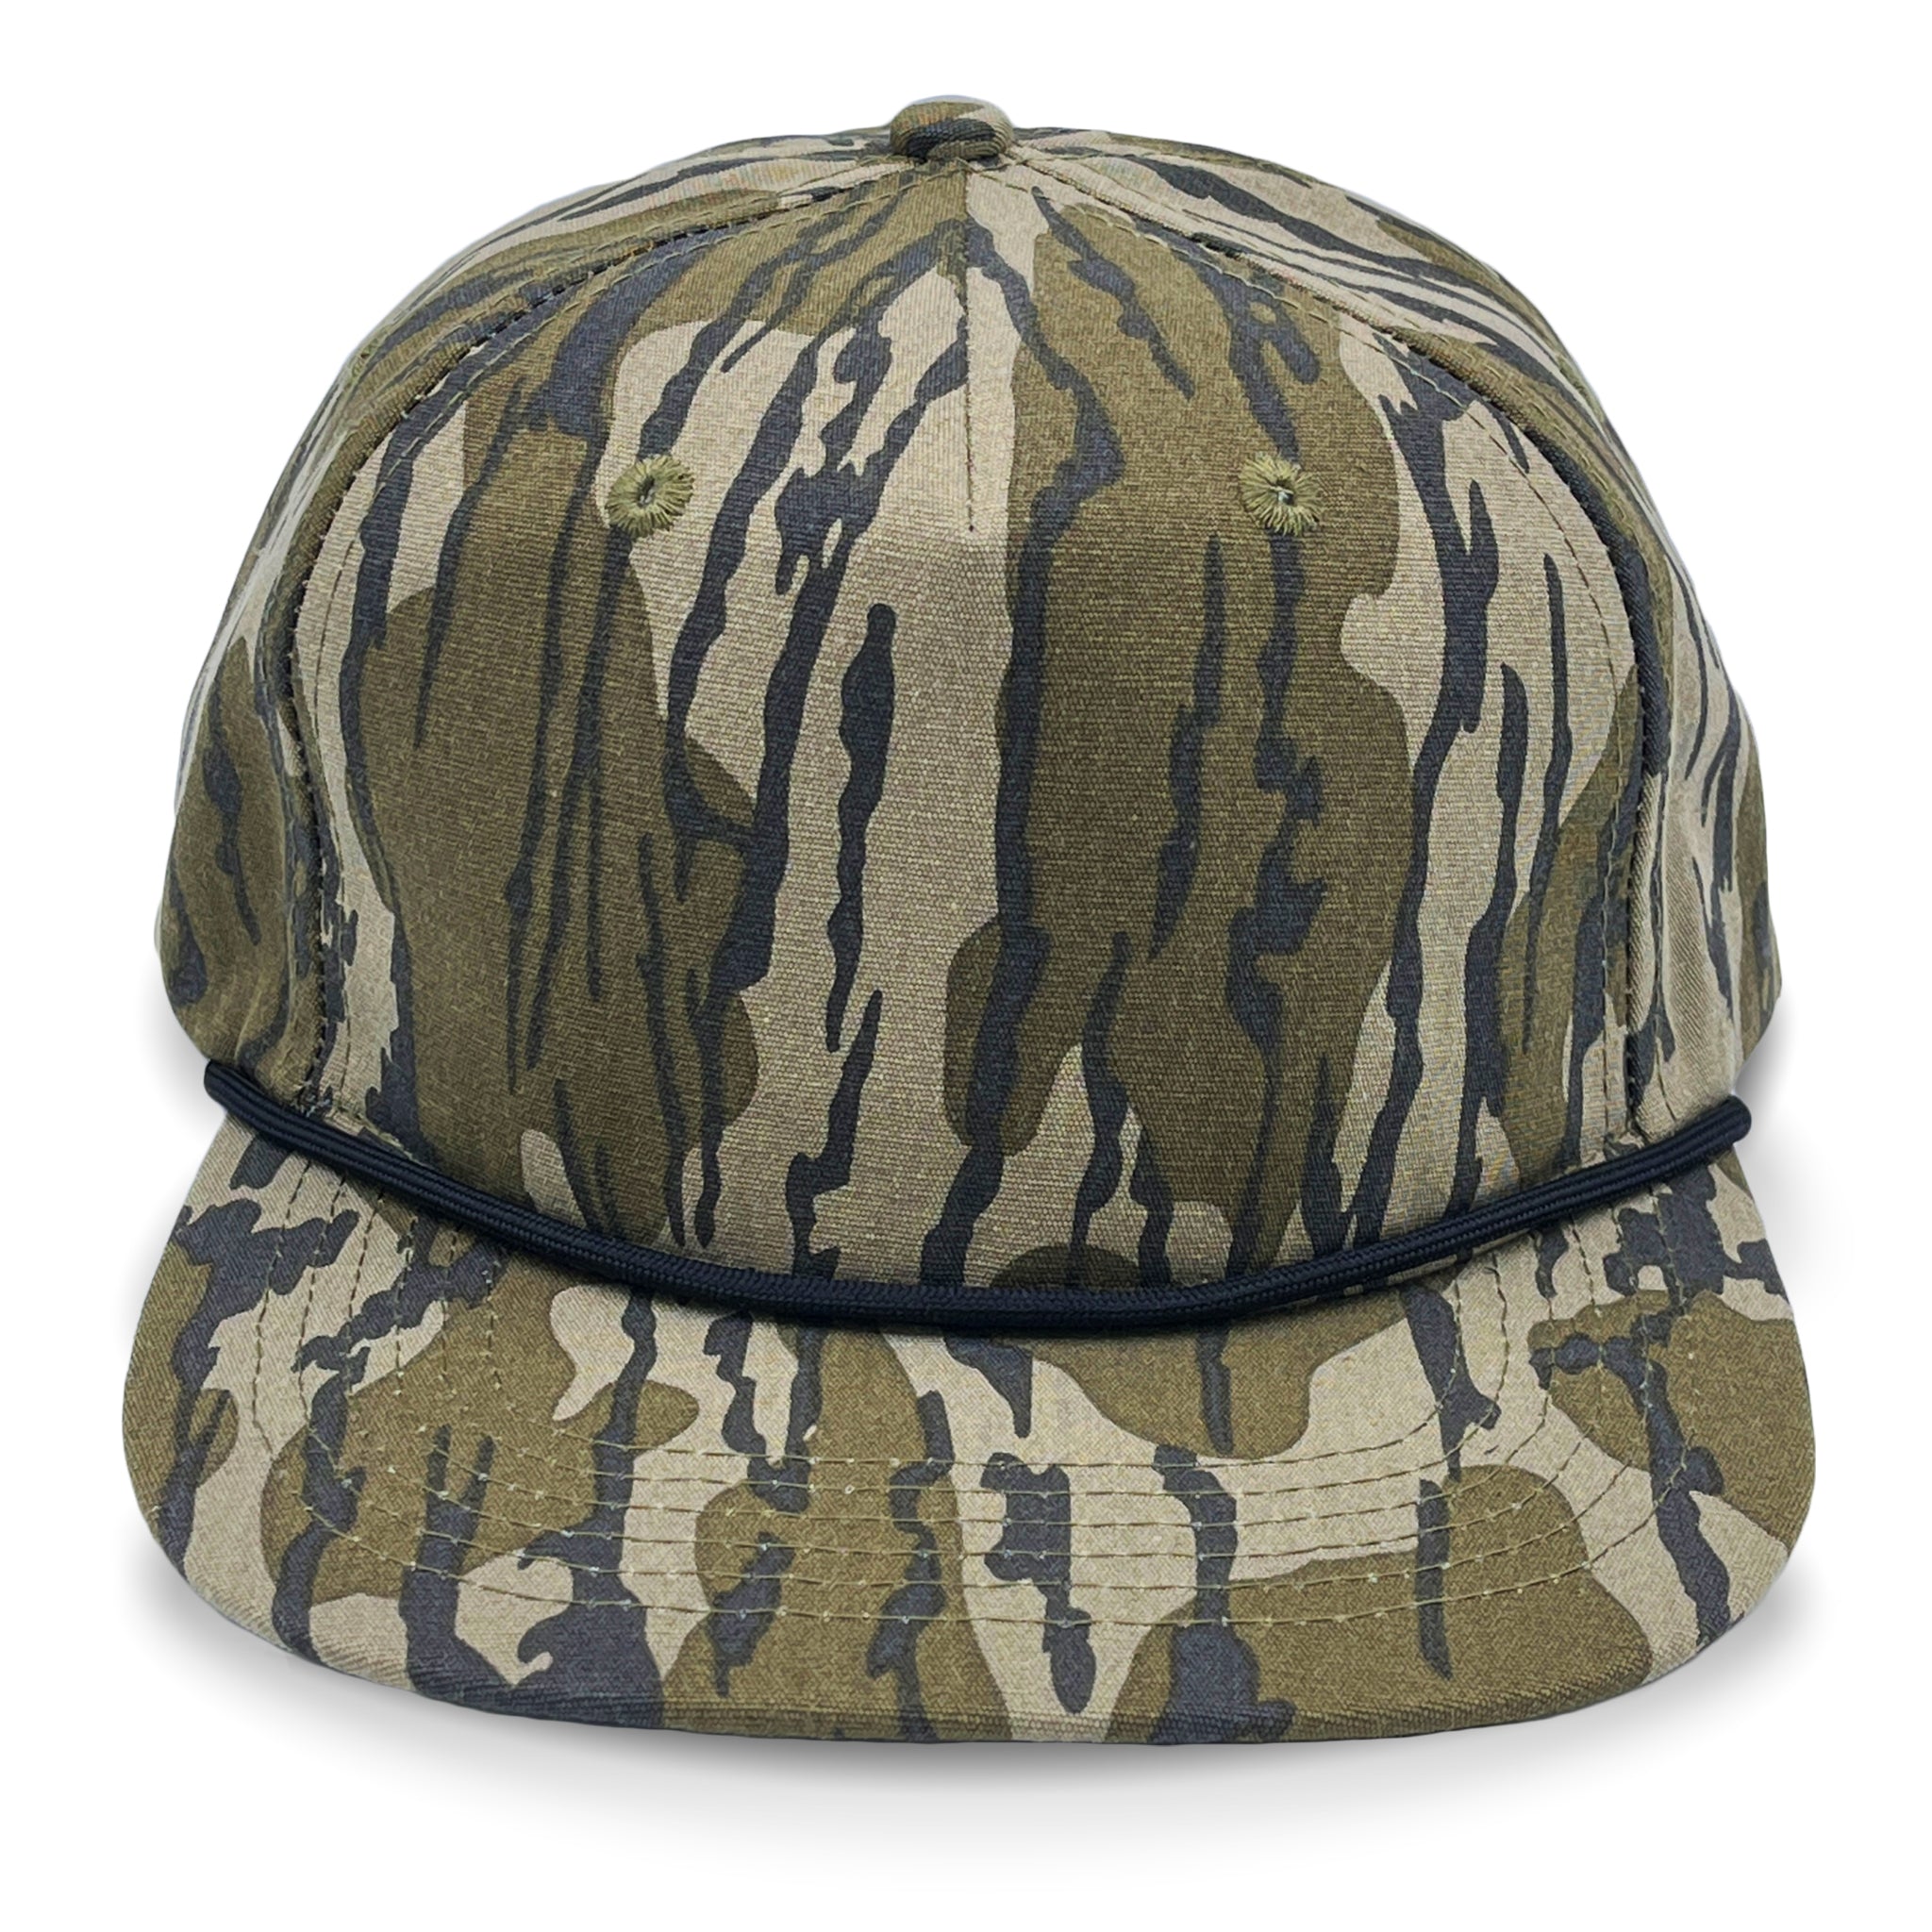 Mossy Oak – Lost Hat Co.